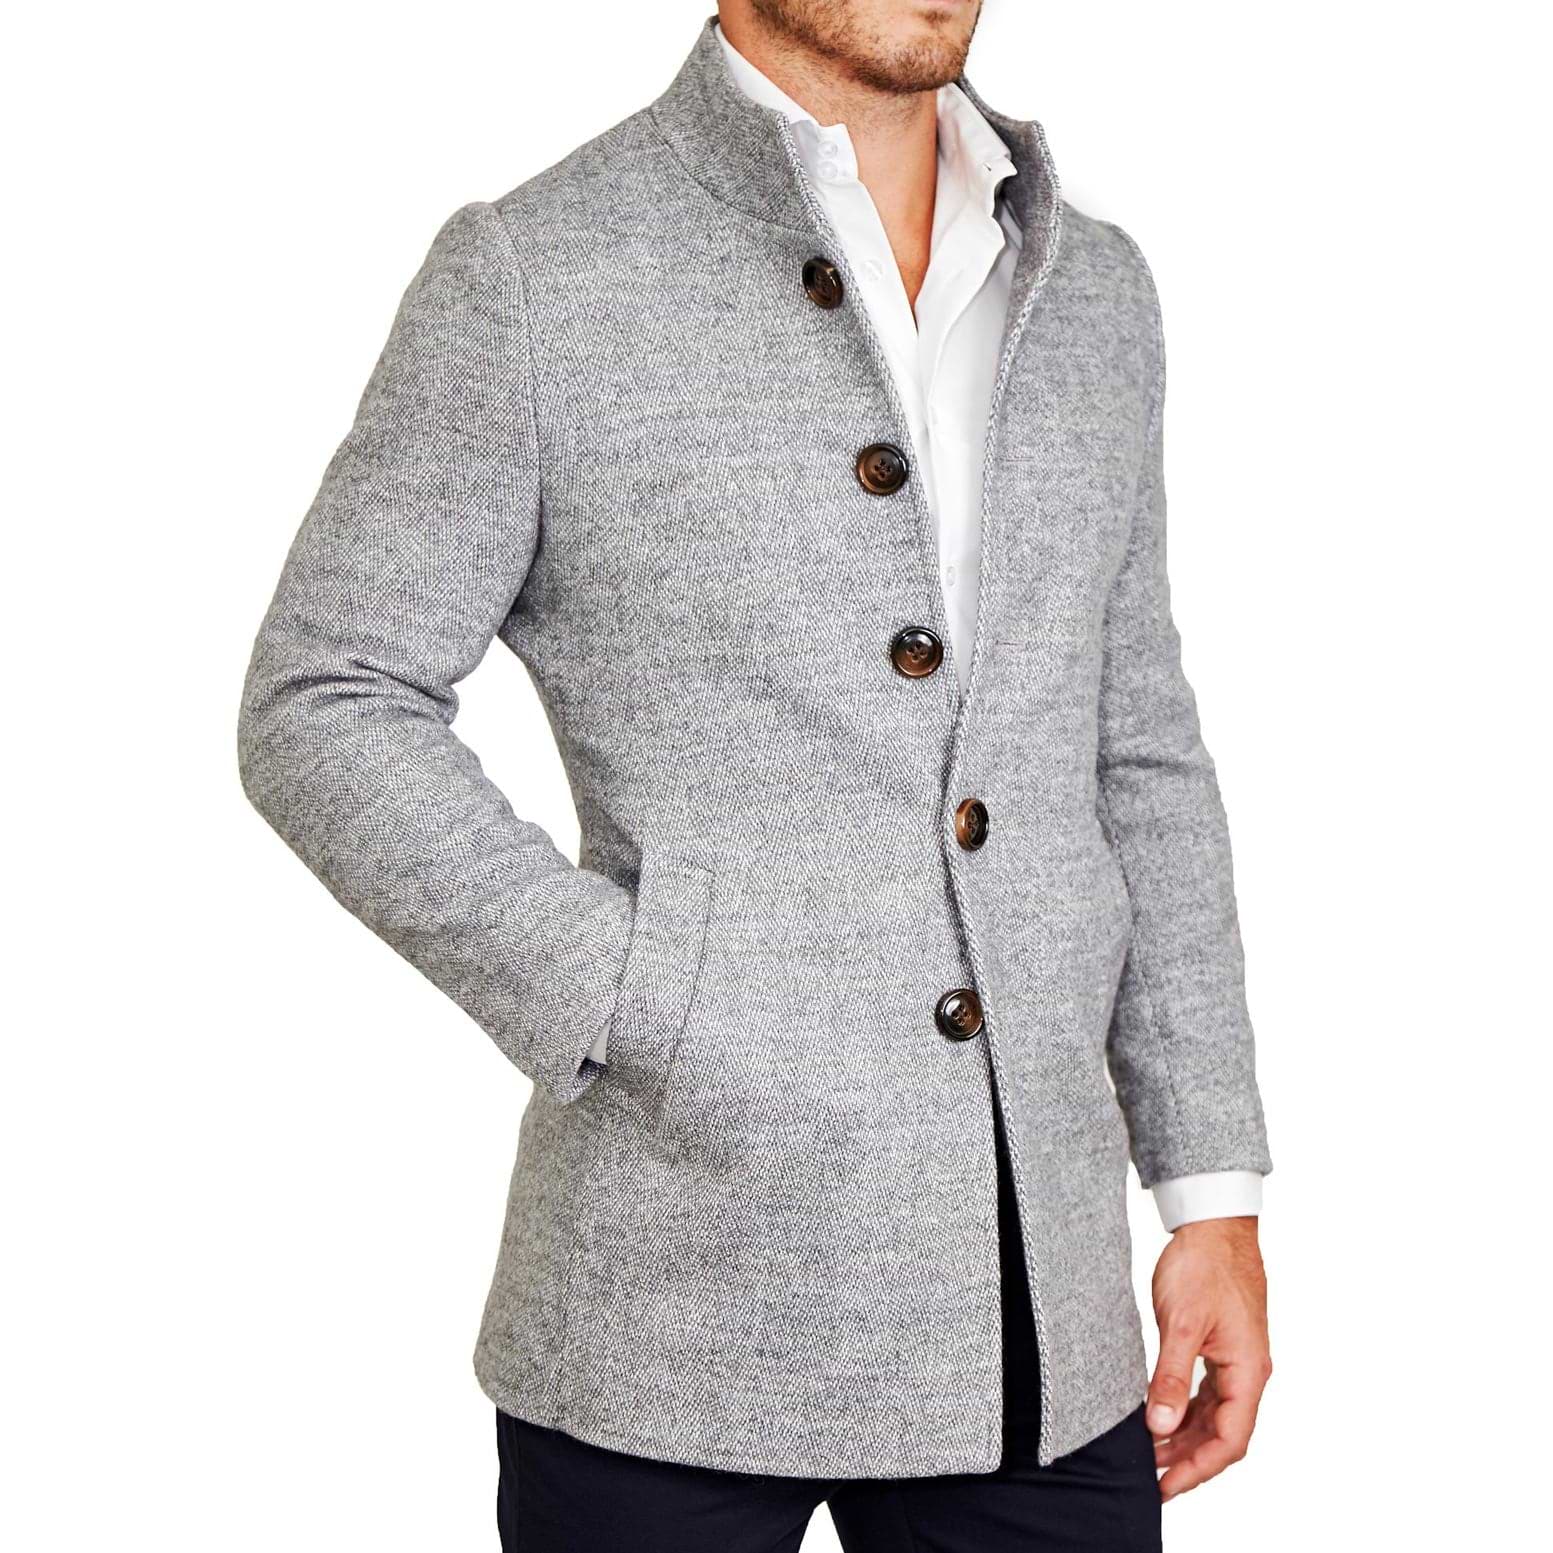 Open Button Overcoat - Grey Herringbone